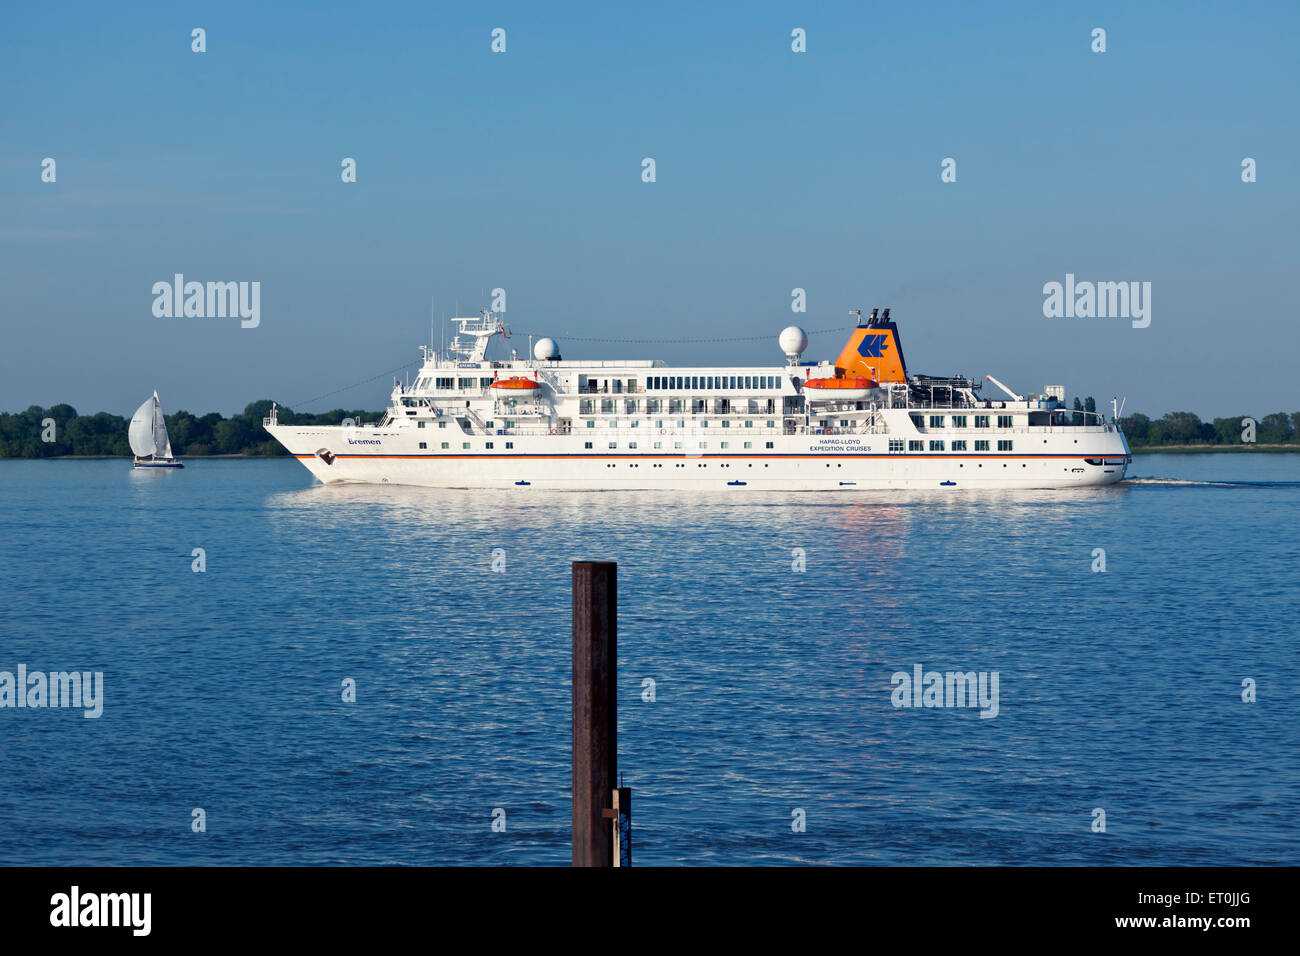 Expedition cruise ship "Bremen", exploité par Hapag-Lloyd, sur l'Elbe Banque D'Images